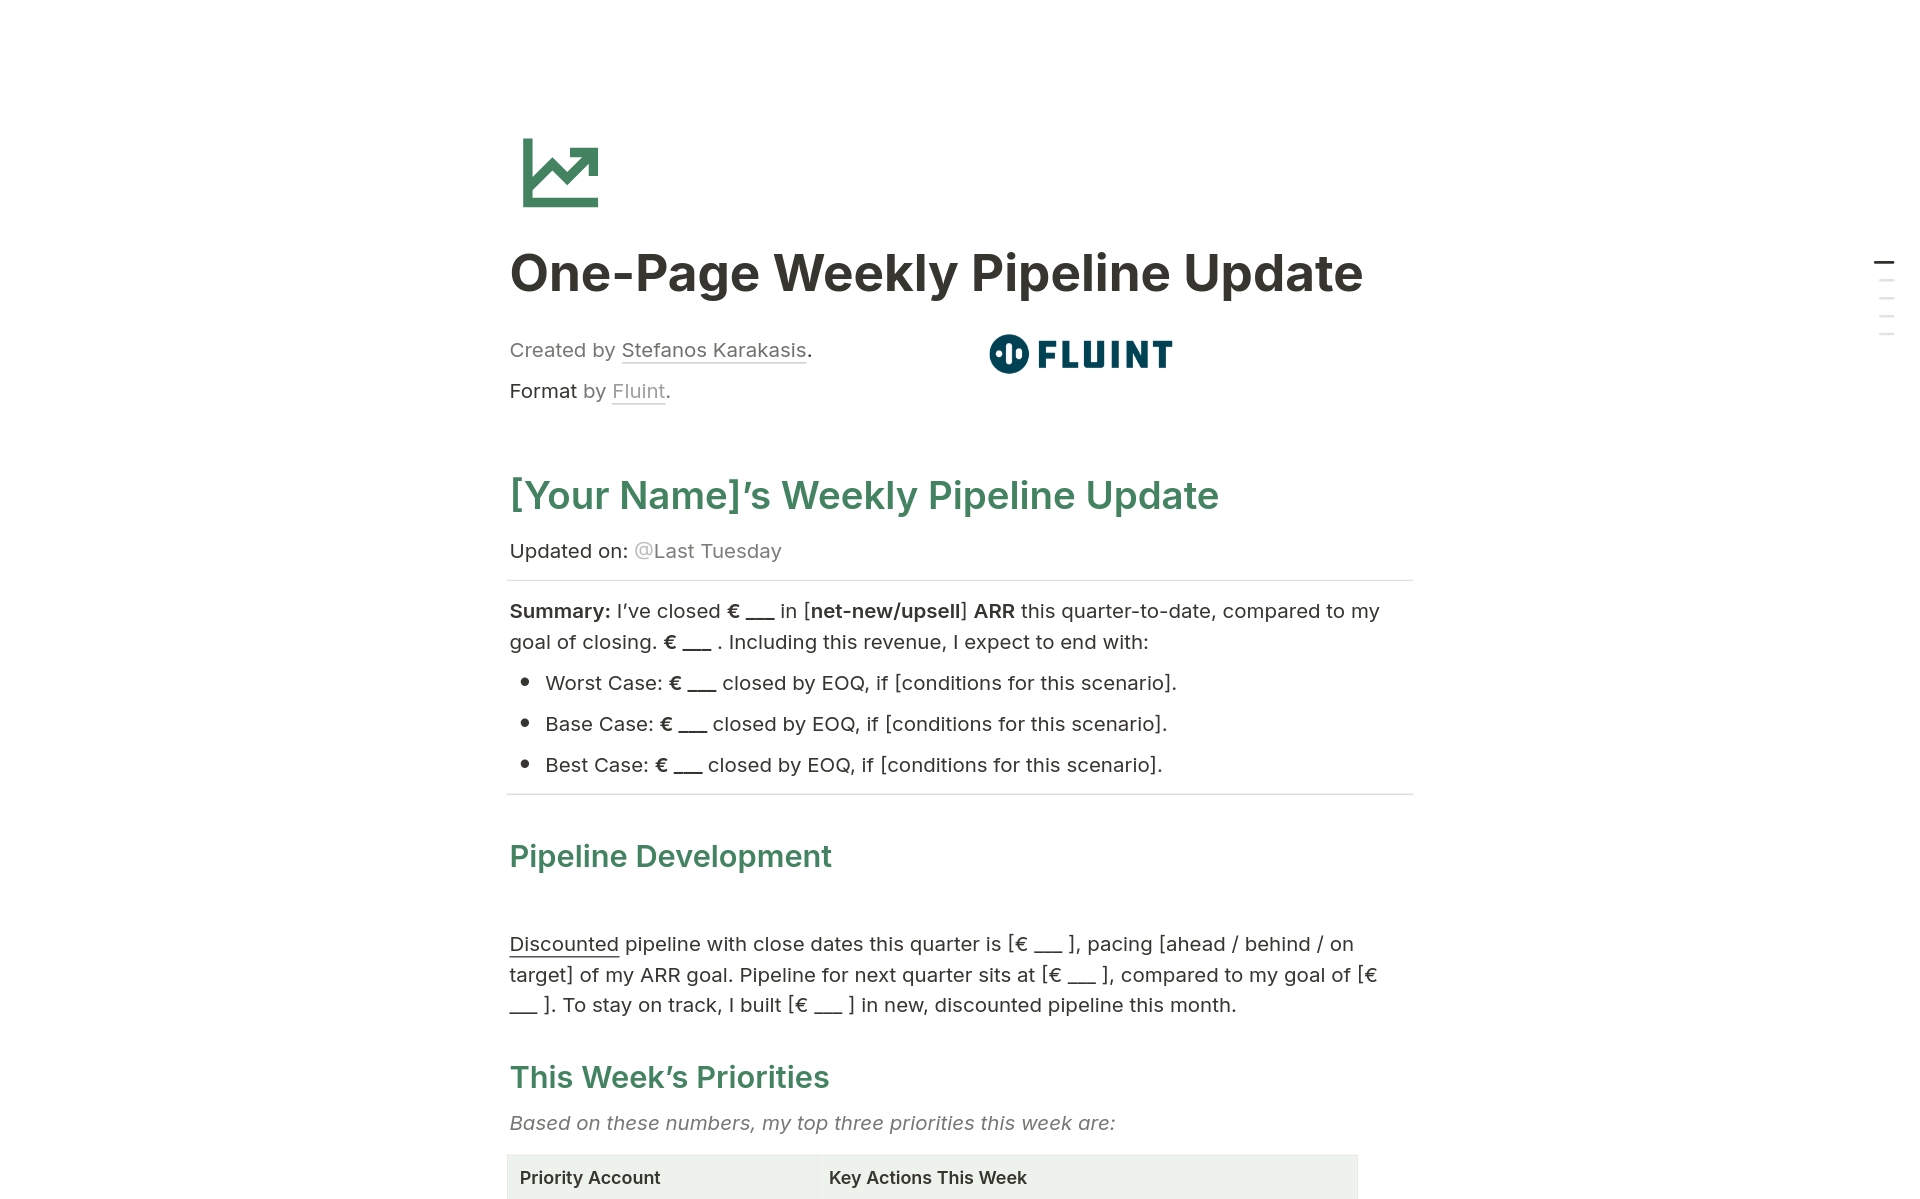 Uma prévia do modelo para One-Page Weekly Pipeline Update